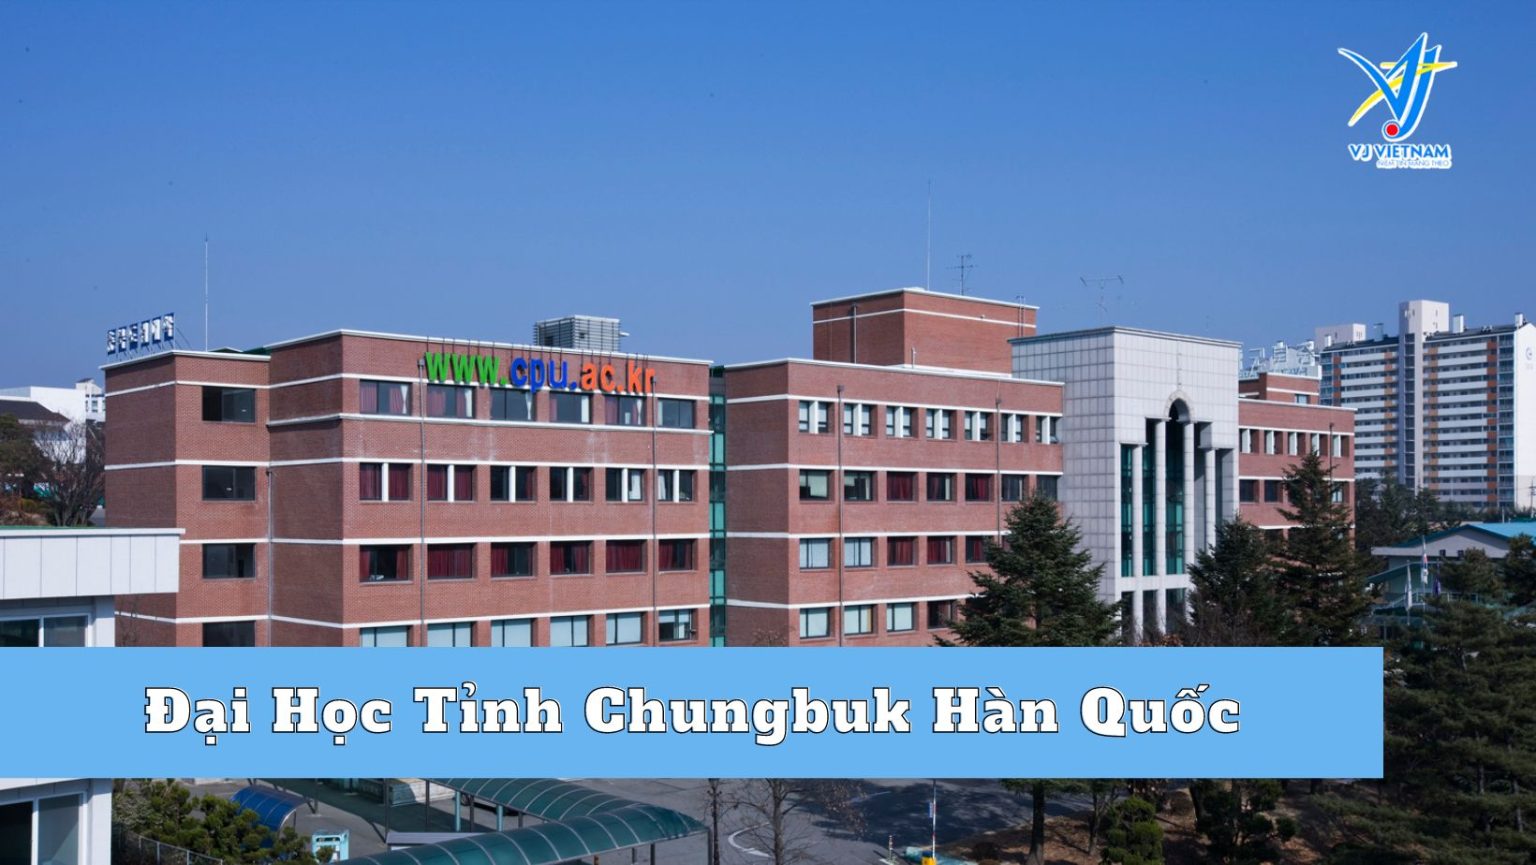 Đại Học Tỉnh Chungbuk Hàn Quốc – Điểm đến du học Hàn Quốc chi phí thấp dành cho bạn